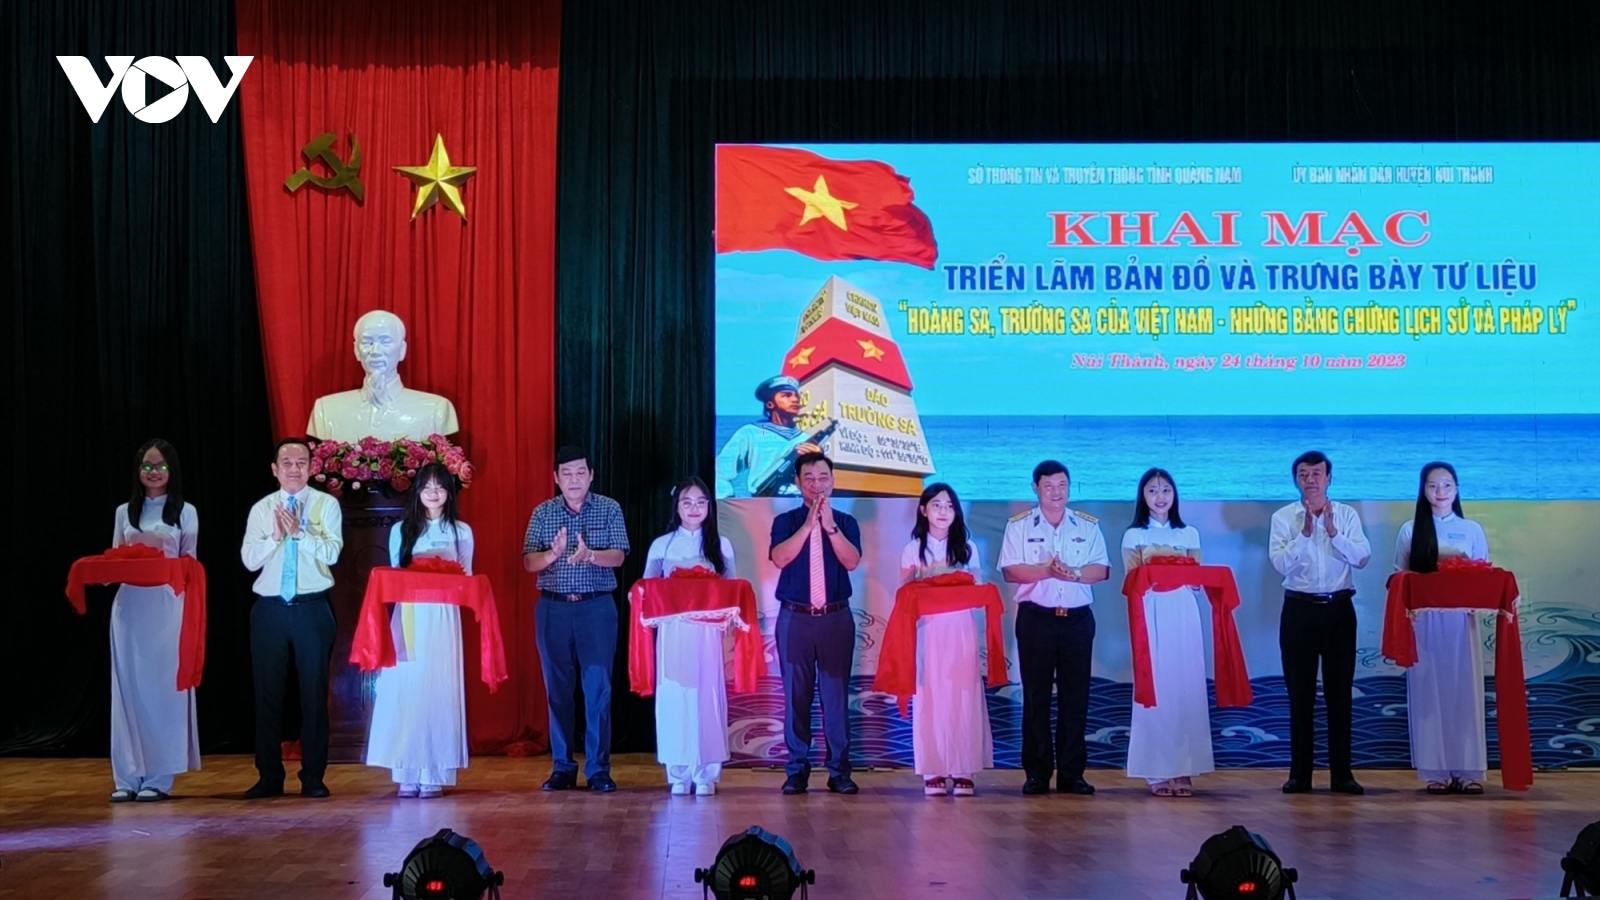 Triển lãm Hoàng Sa, Trường Sa của Việt Nam - Những bằng chứng lịch sử và pháp lý